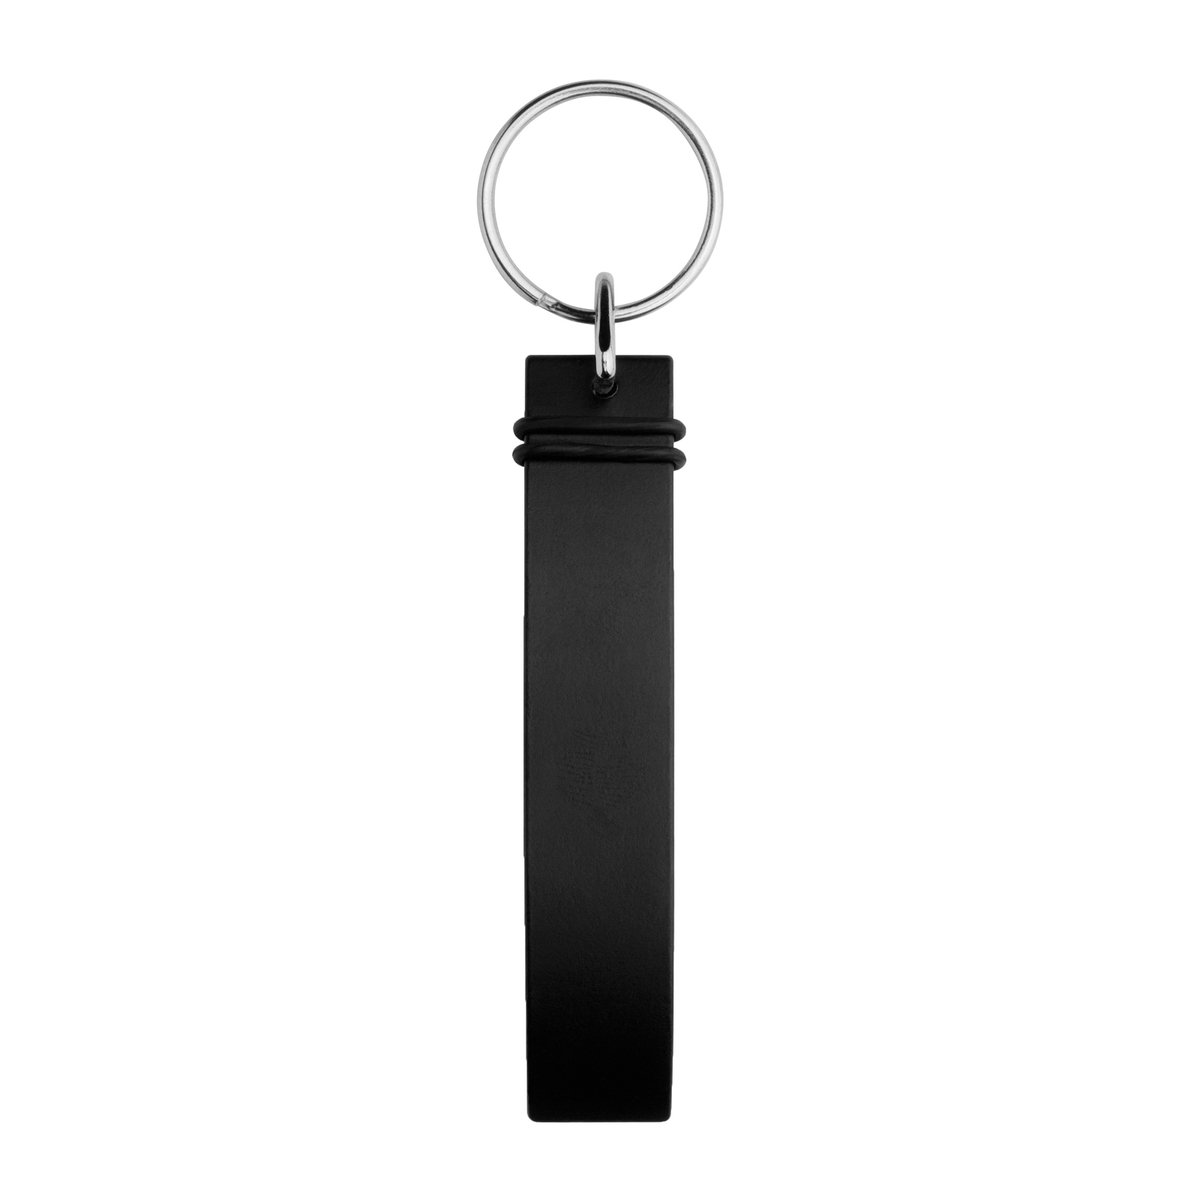 Schlüsselanhänger Smart, schwarz ab 0,49 € ohne Werbeanbringung